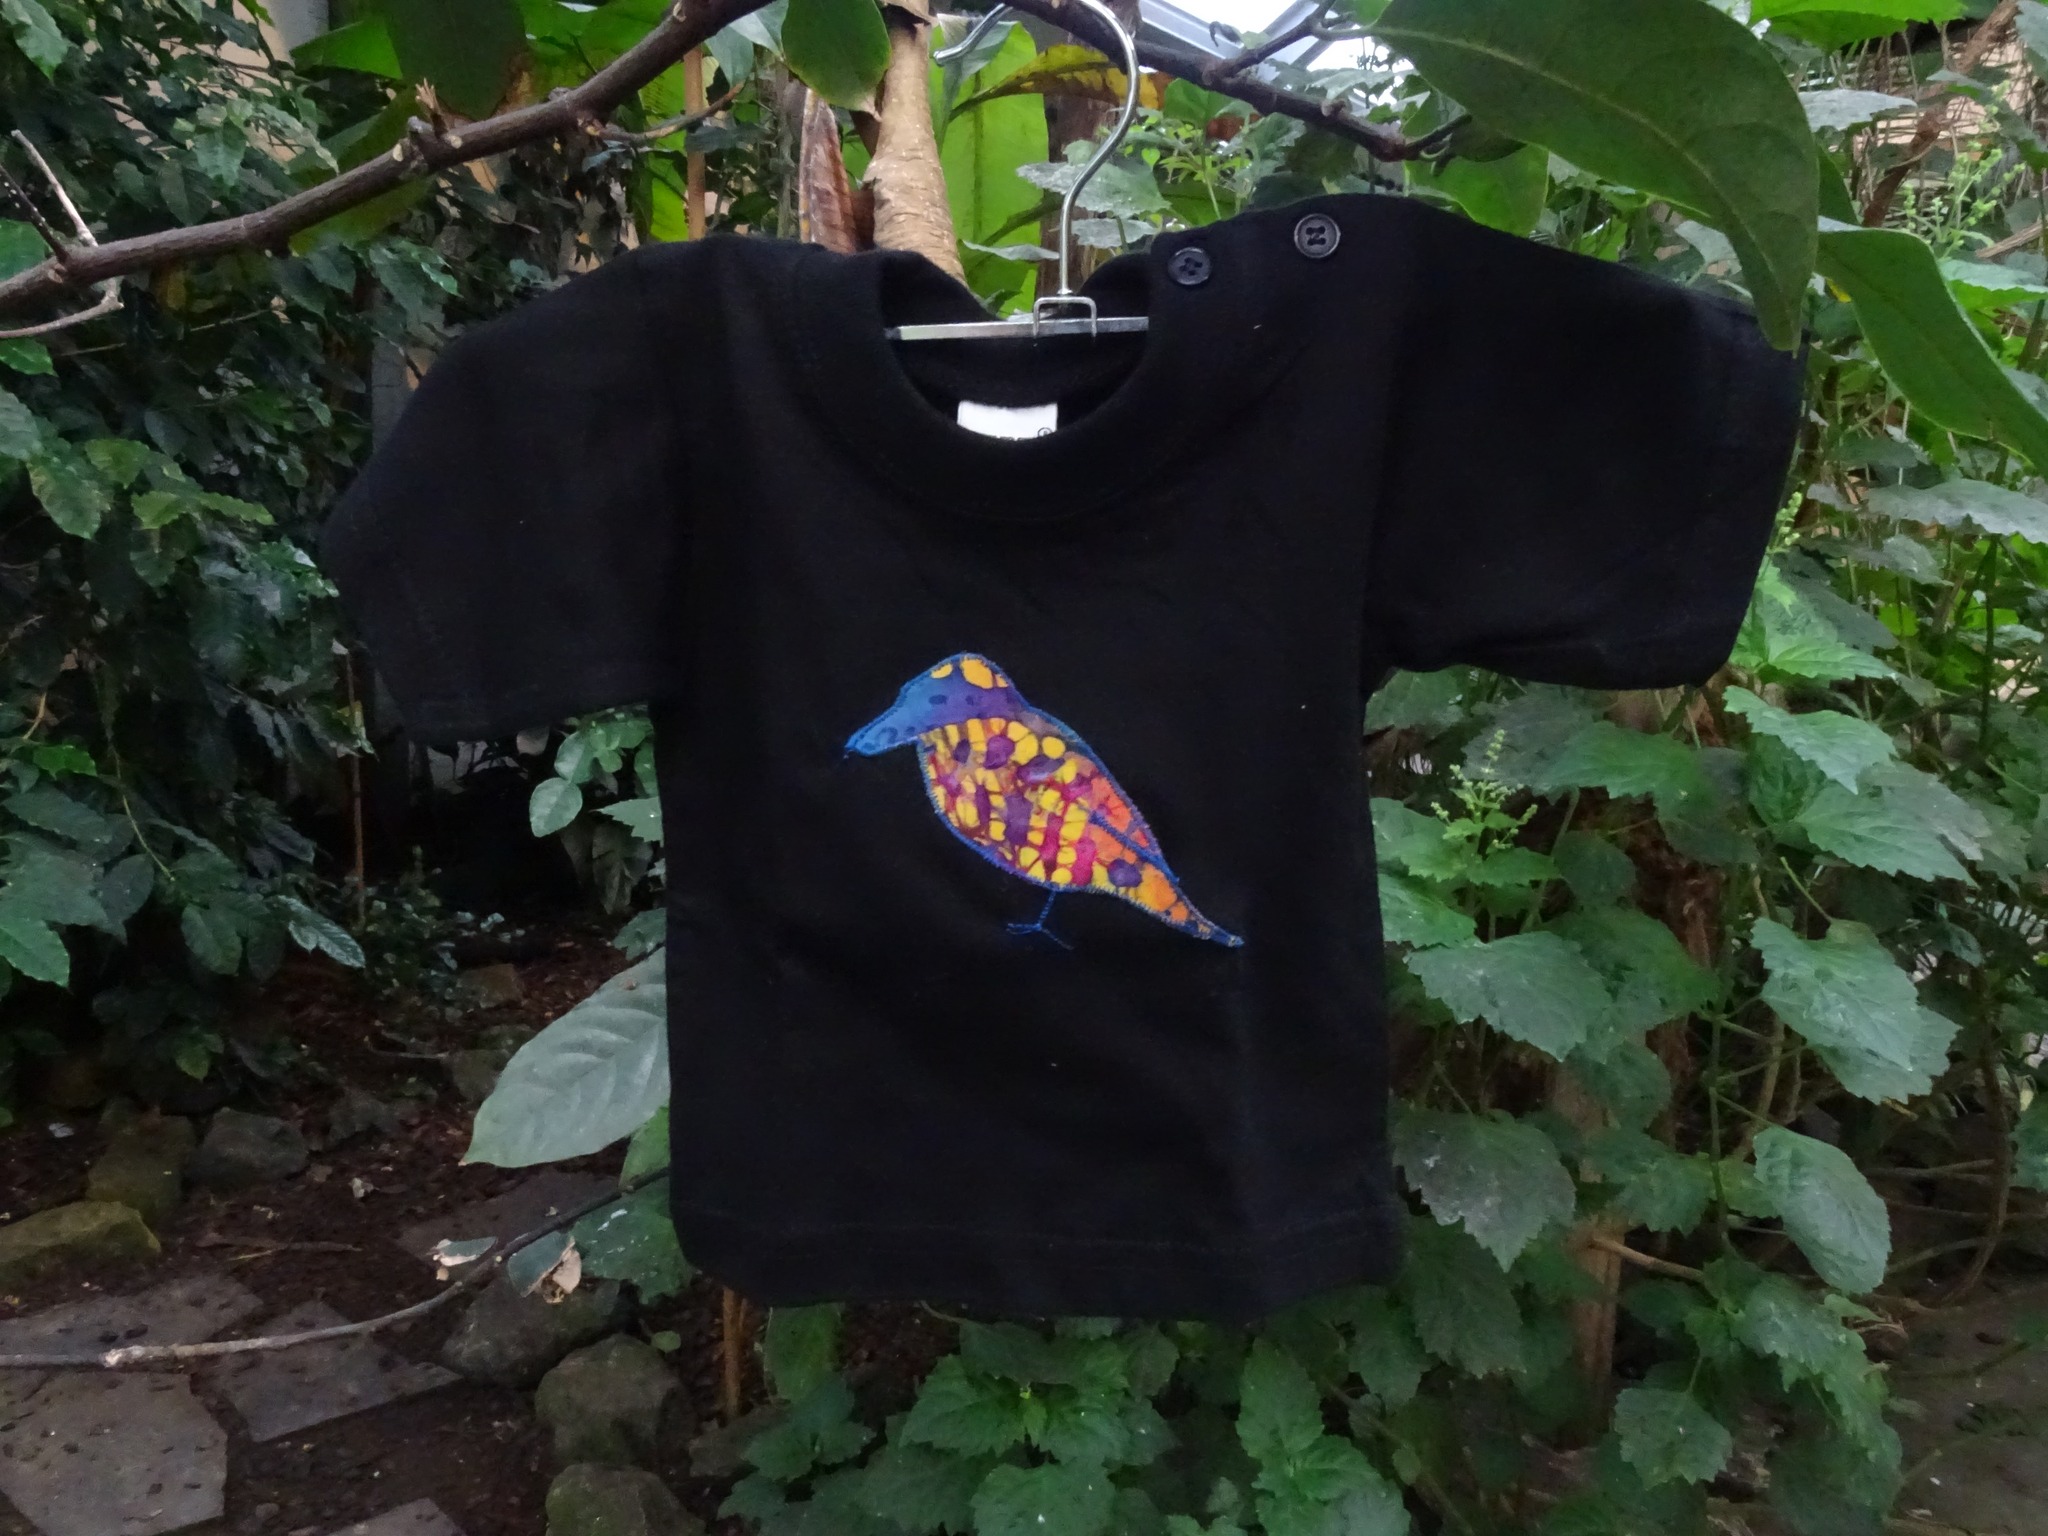 Perfecte t-shirt voor je kleintje! Met een leuke gebatikte vogel erop. 